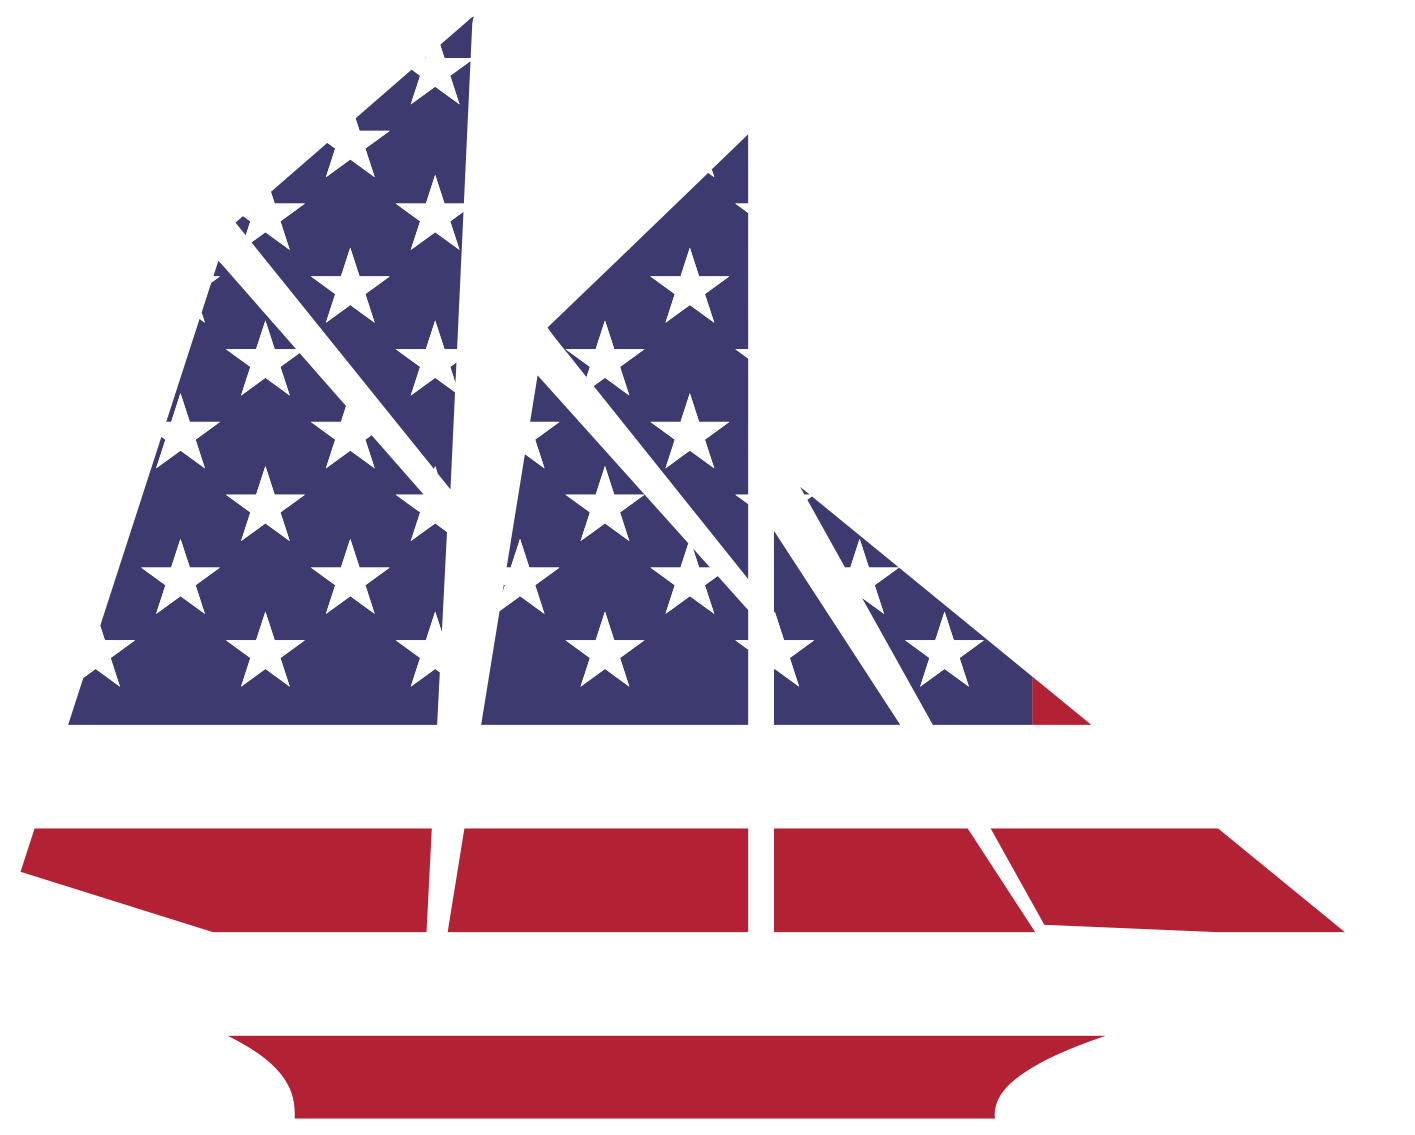 American Sailboat